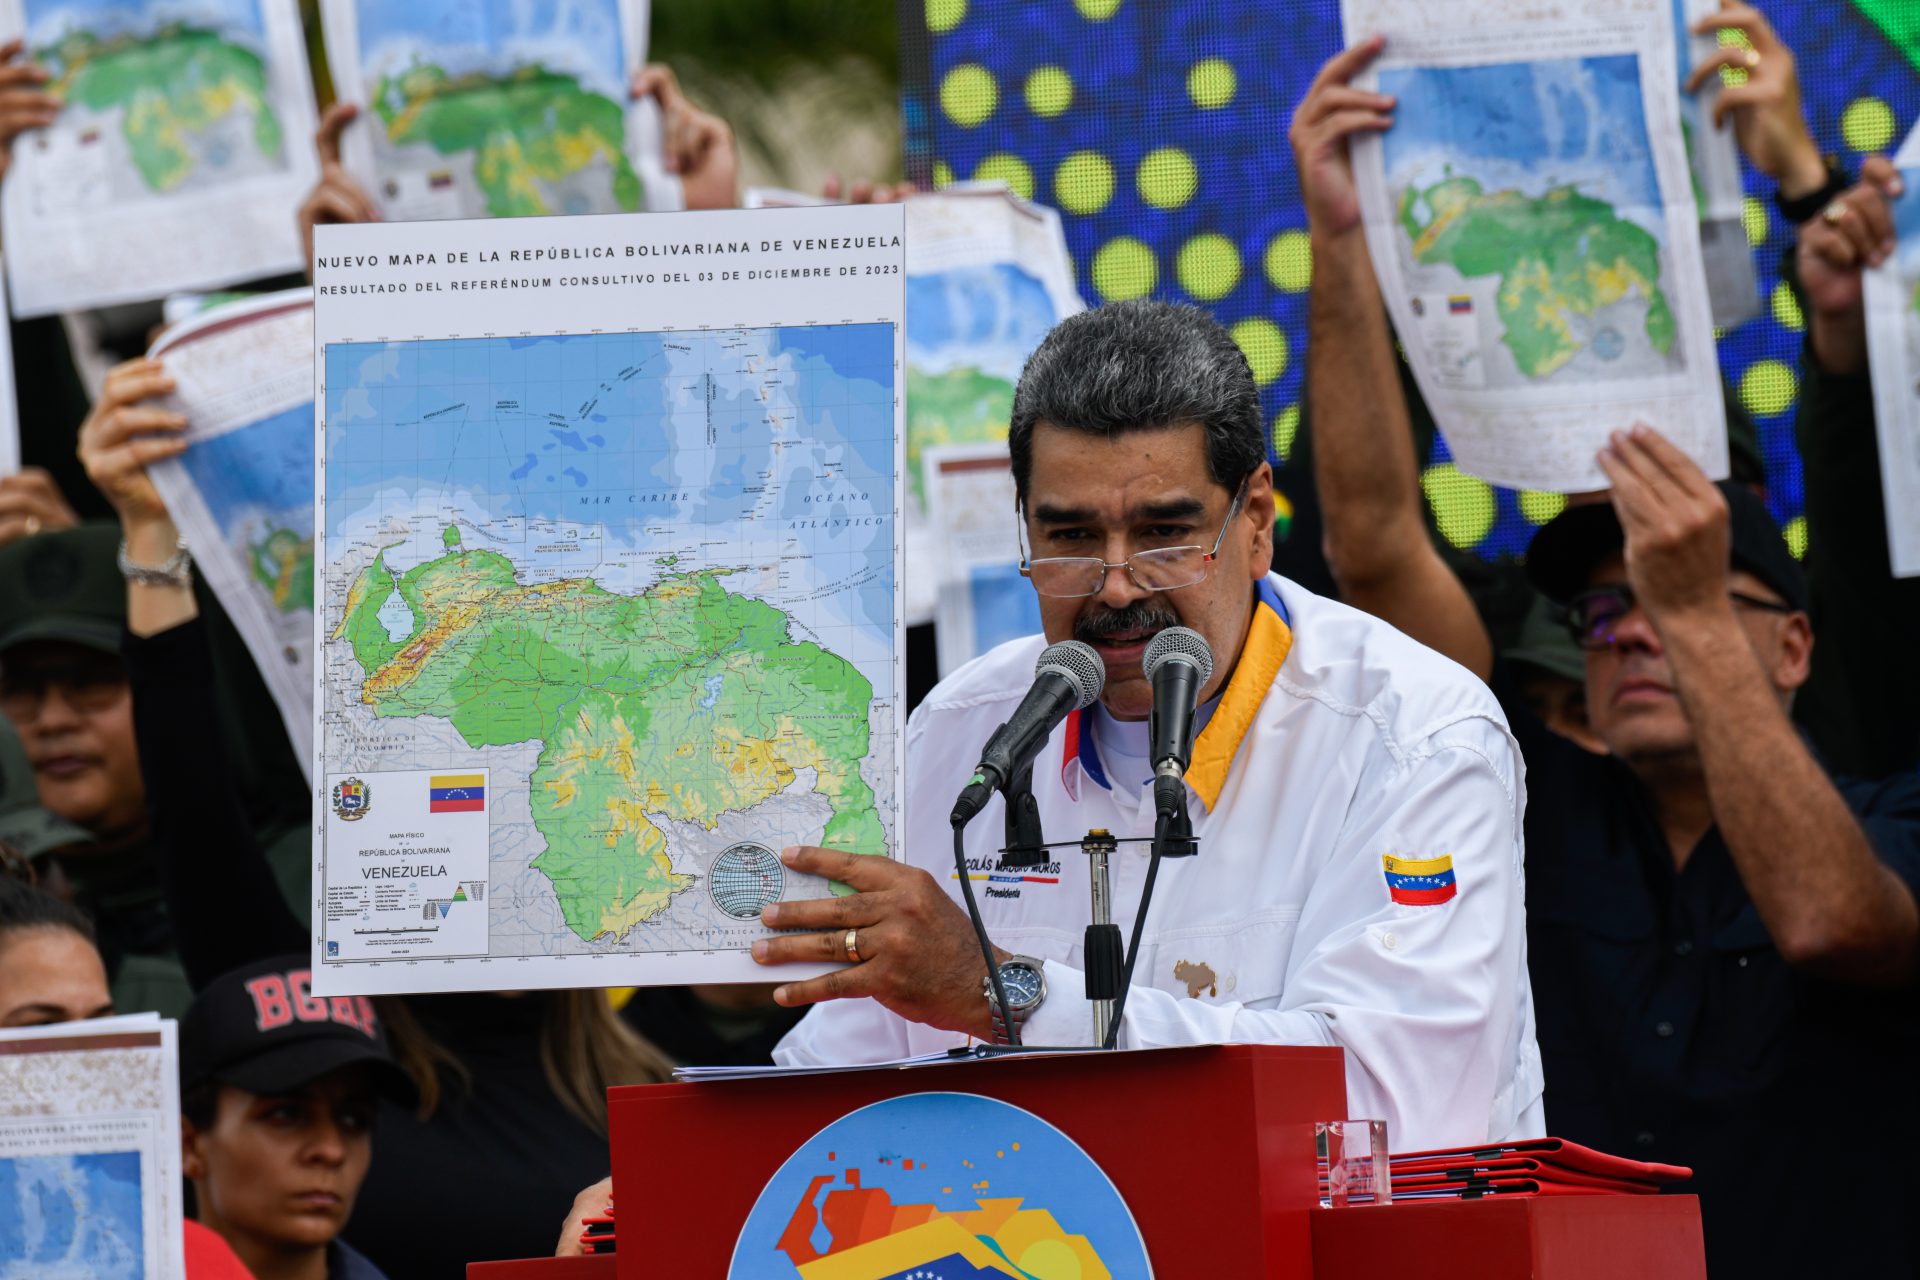 El rumbo autoritario de Maduro